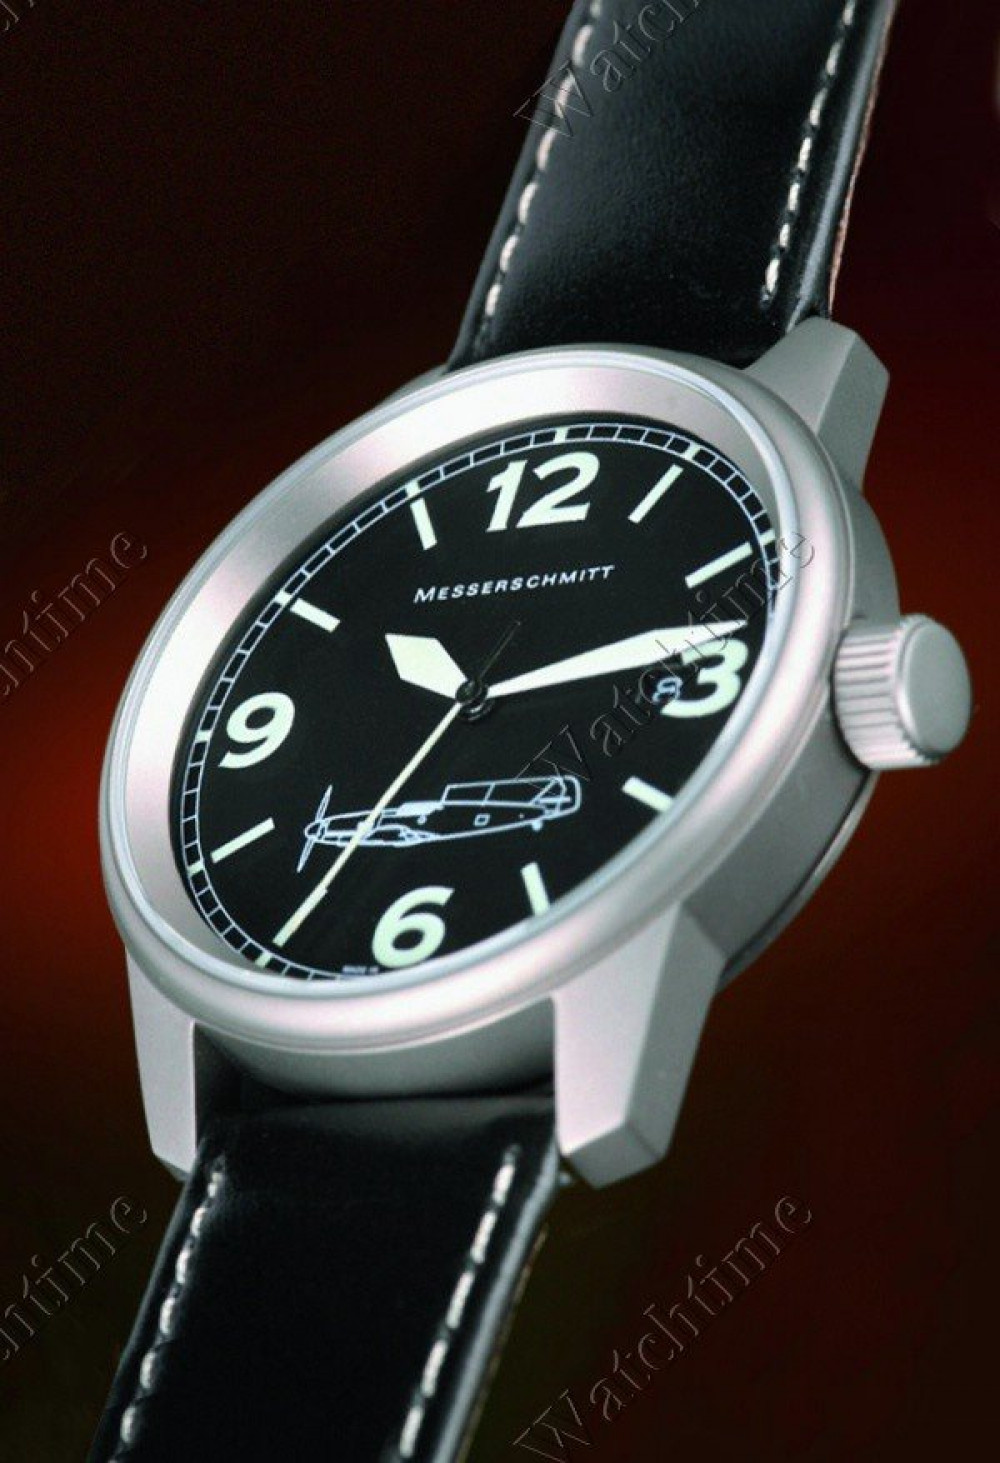 Zegarek firmy Messerschmitt, model ME 109